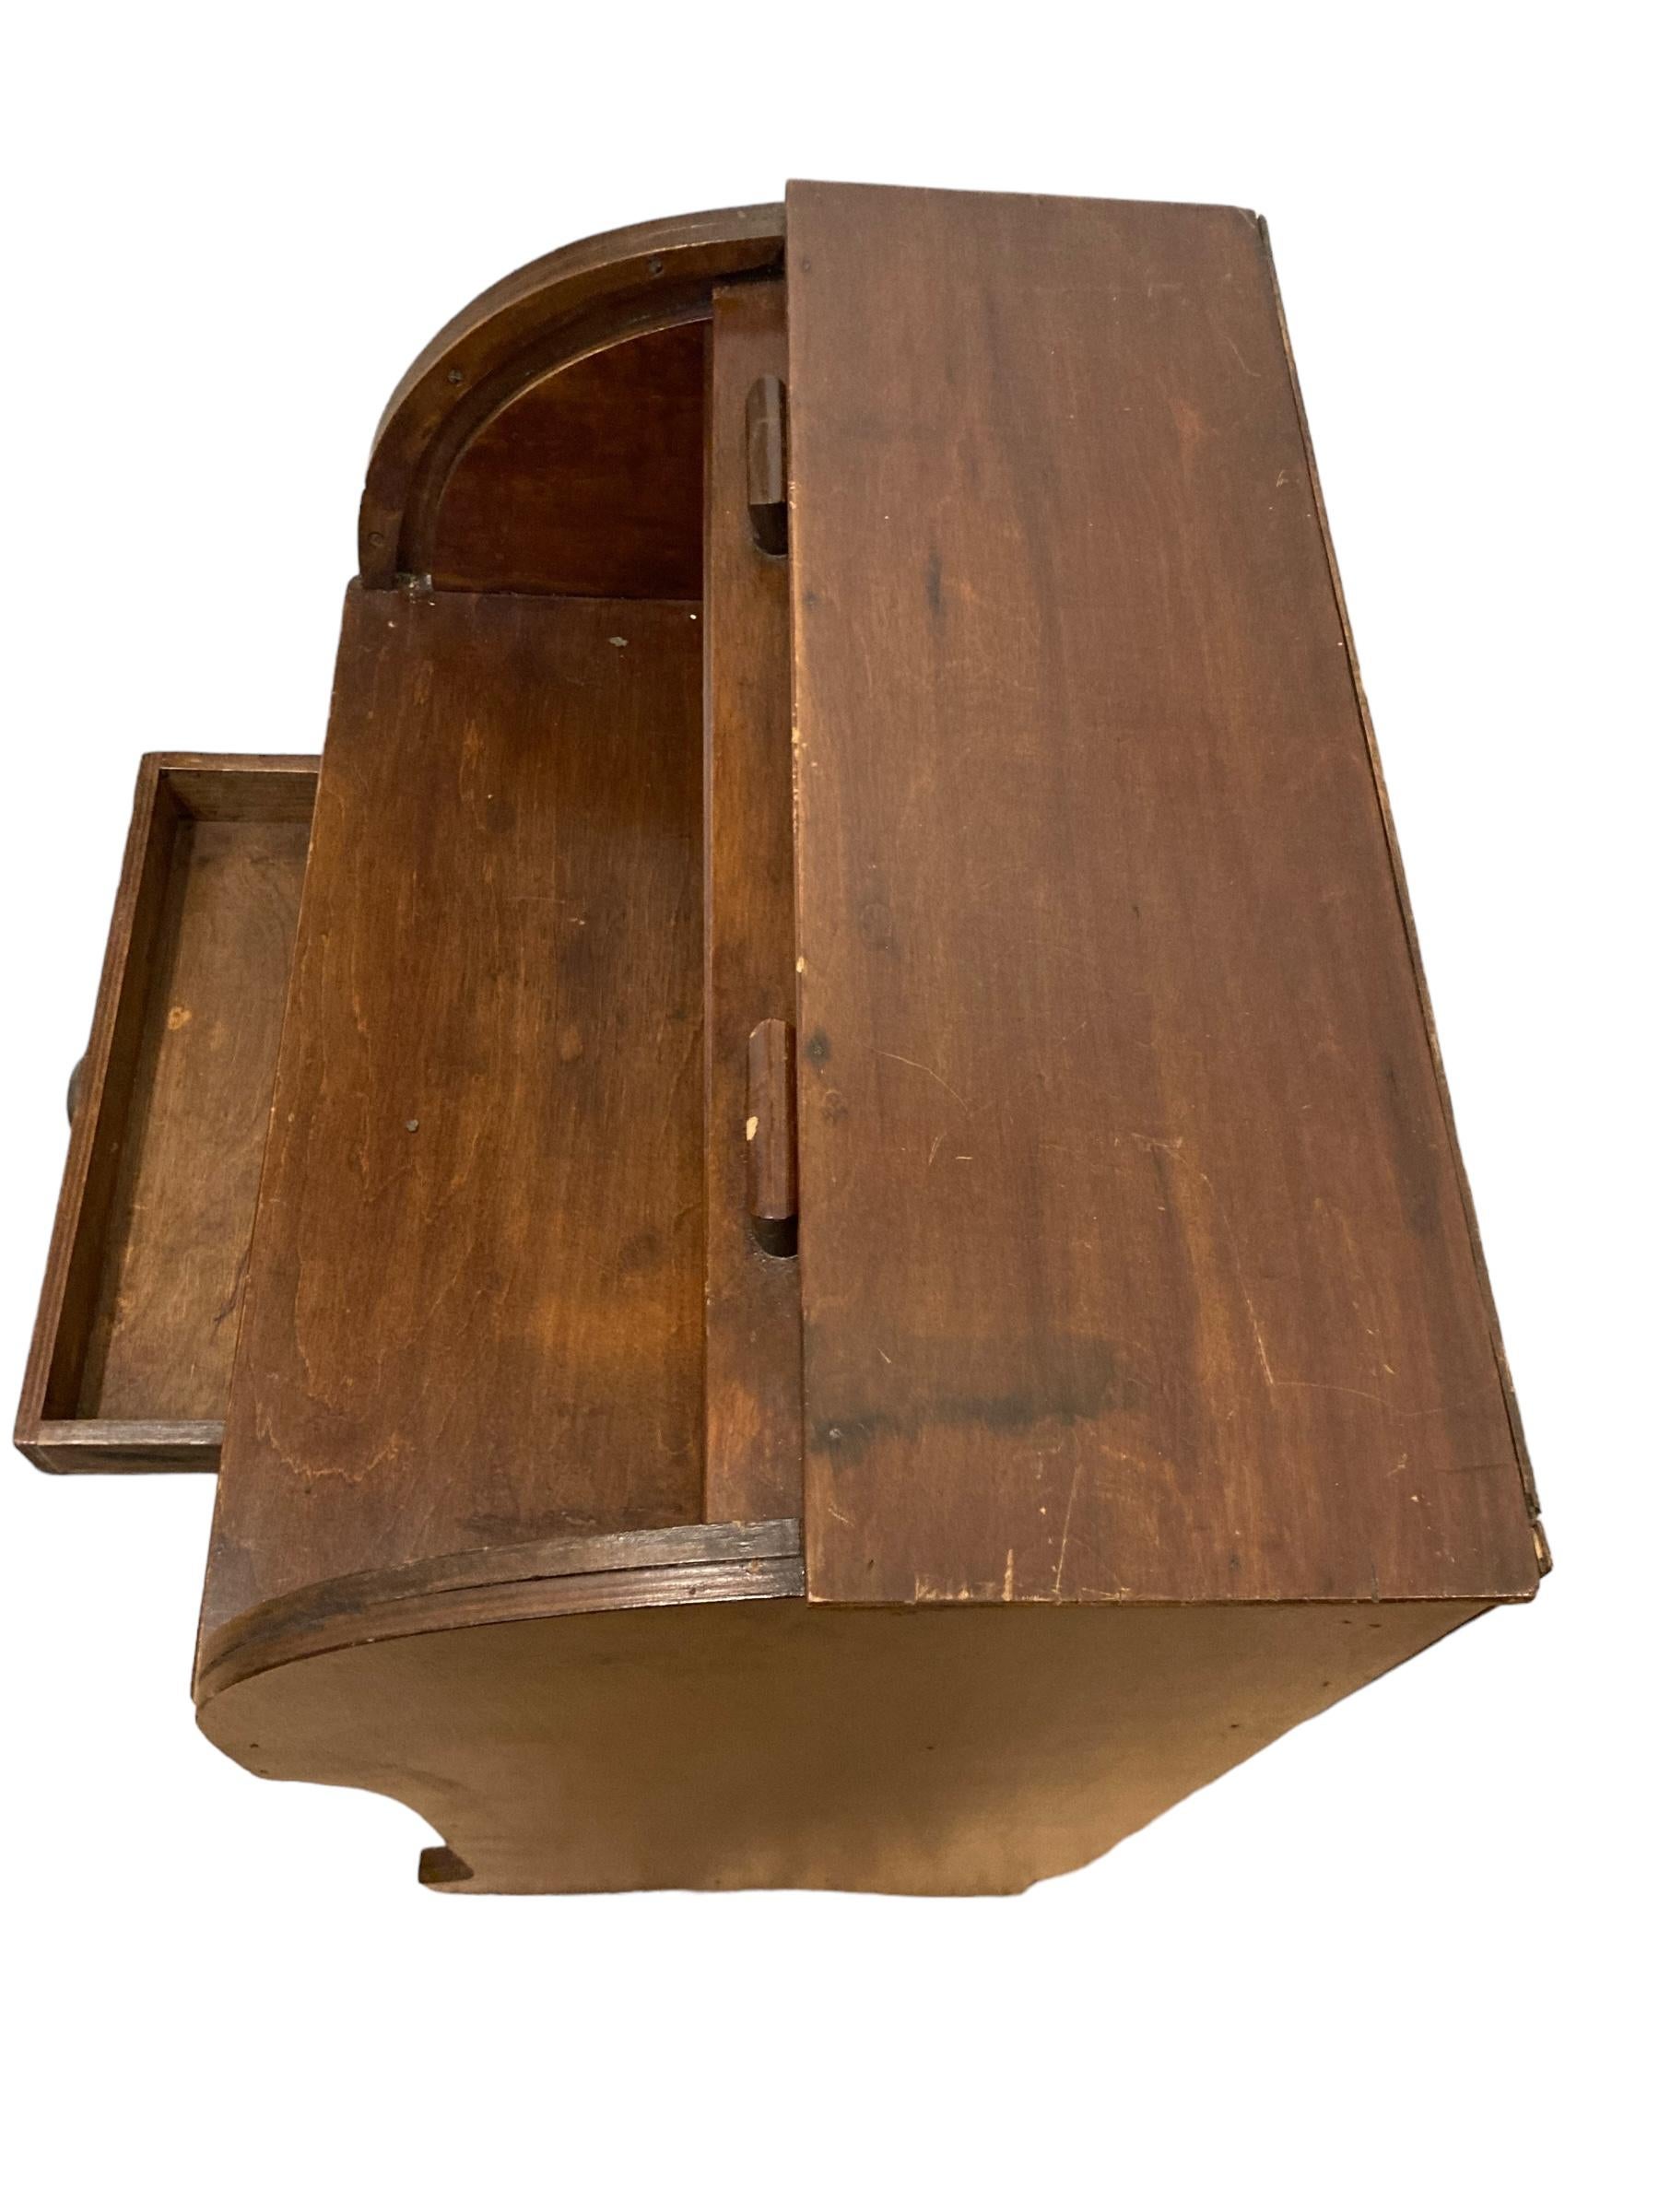 Childs Vintage Roll-Top-Schreibtisch, Bureau. Die perfekte Ergänzung für Ihr Kinderzimmer. Dieser kompakte, aus hochwertigem Holz gefertigte Schreibtisch verbindet Funktionalität mit einem Hauch von Eleganz. Die kompakte Größe macht ihn ideal für